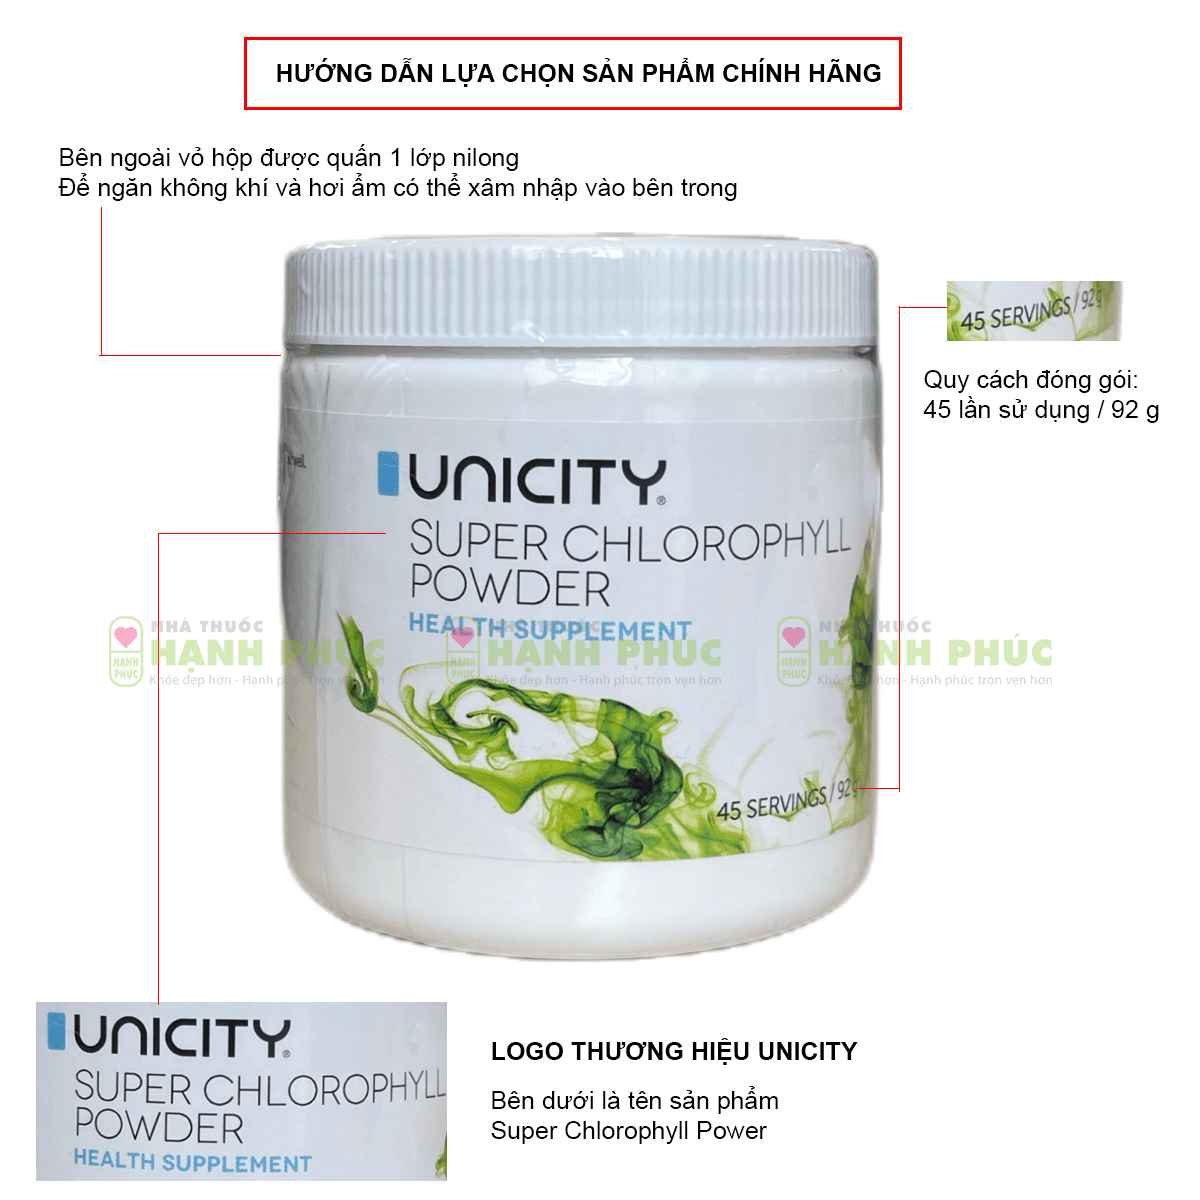 Hướng dẫn lựa chọn sản phẩm bột diệp lục Unicity Super Chlorophyll Powder chính hãng 